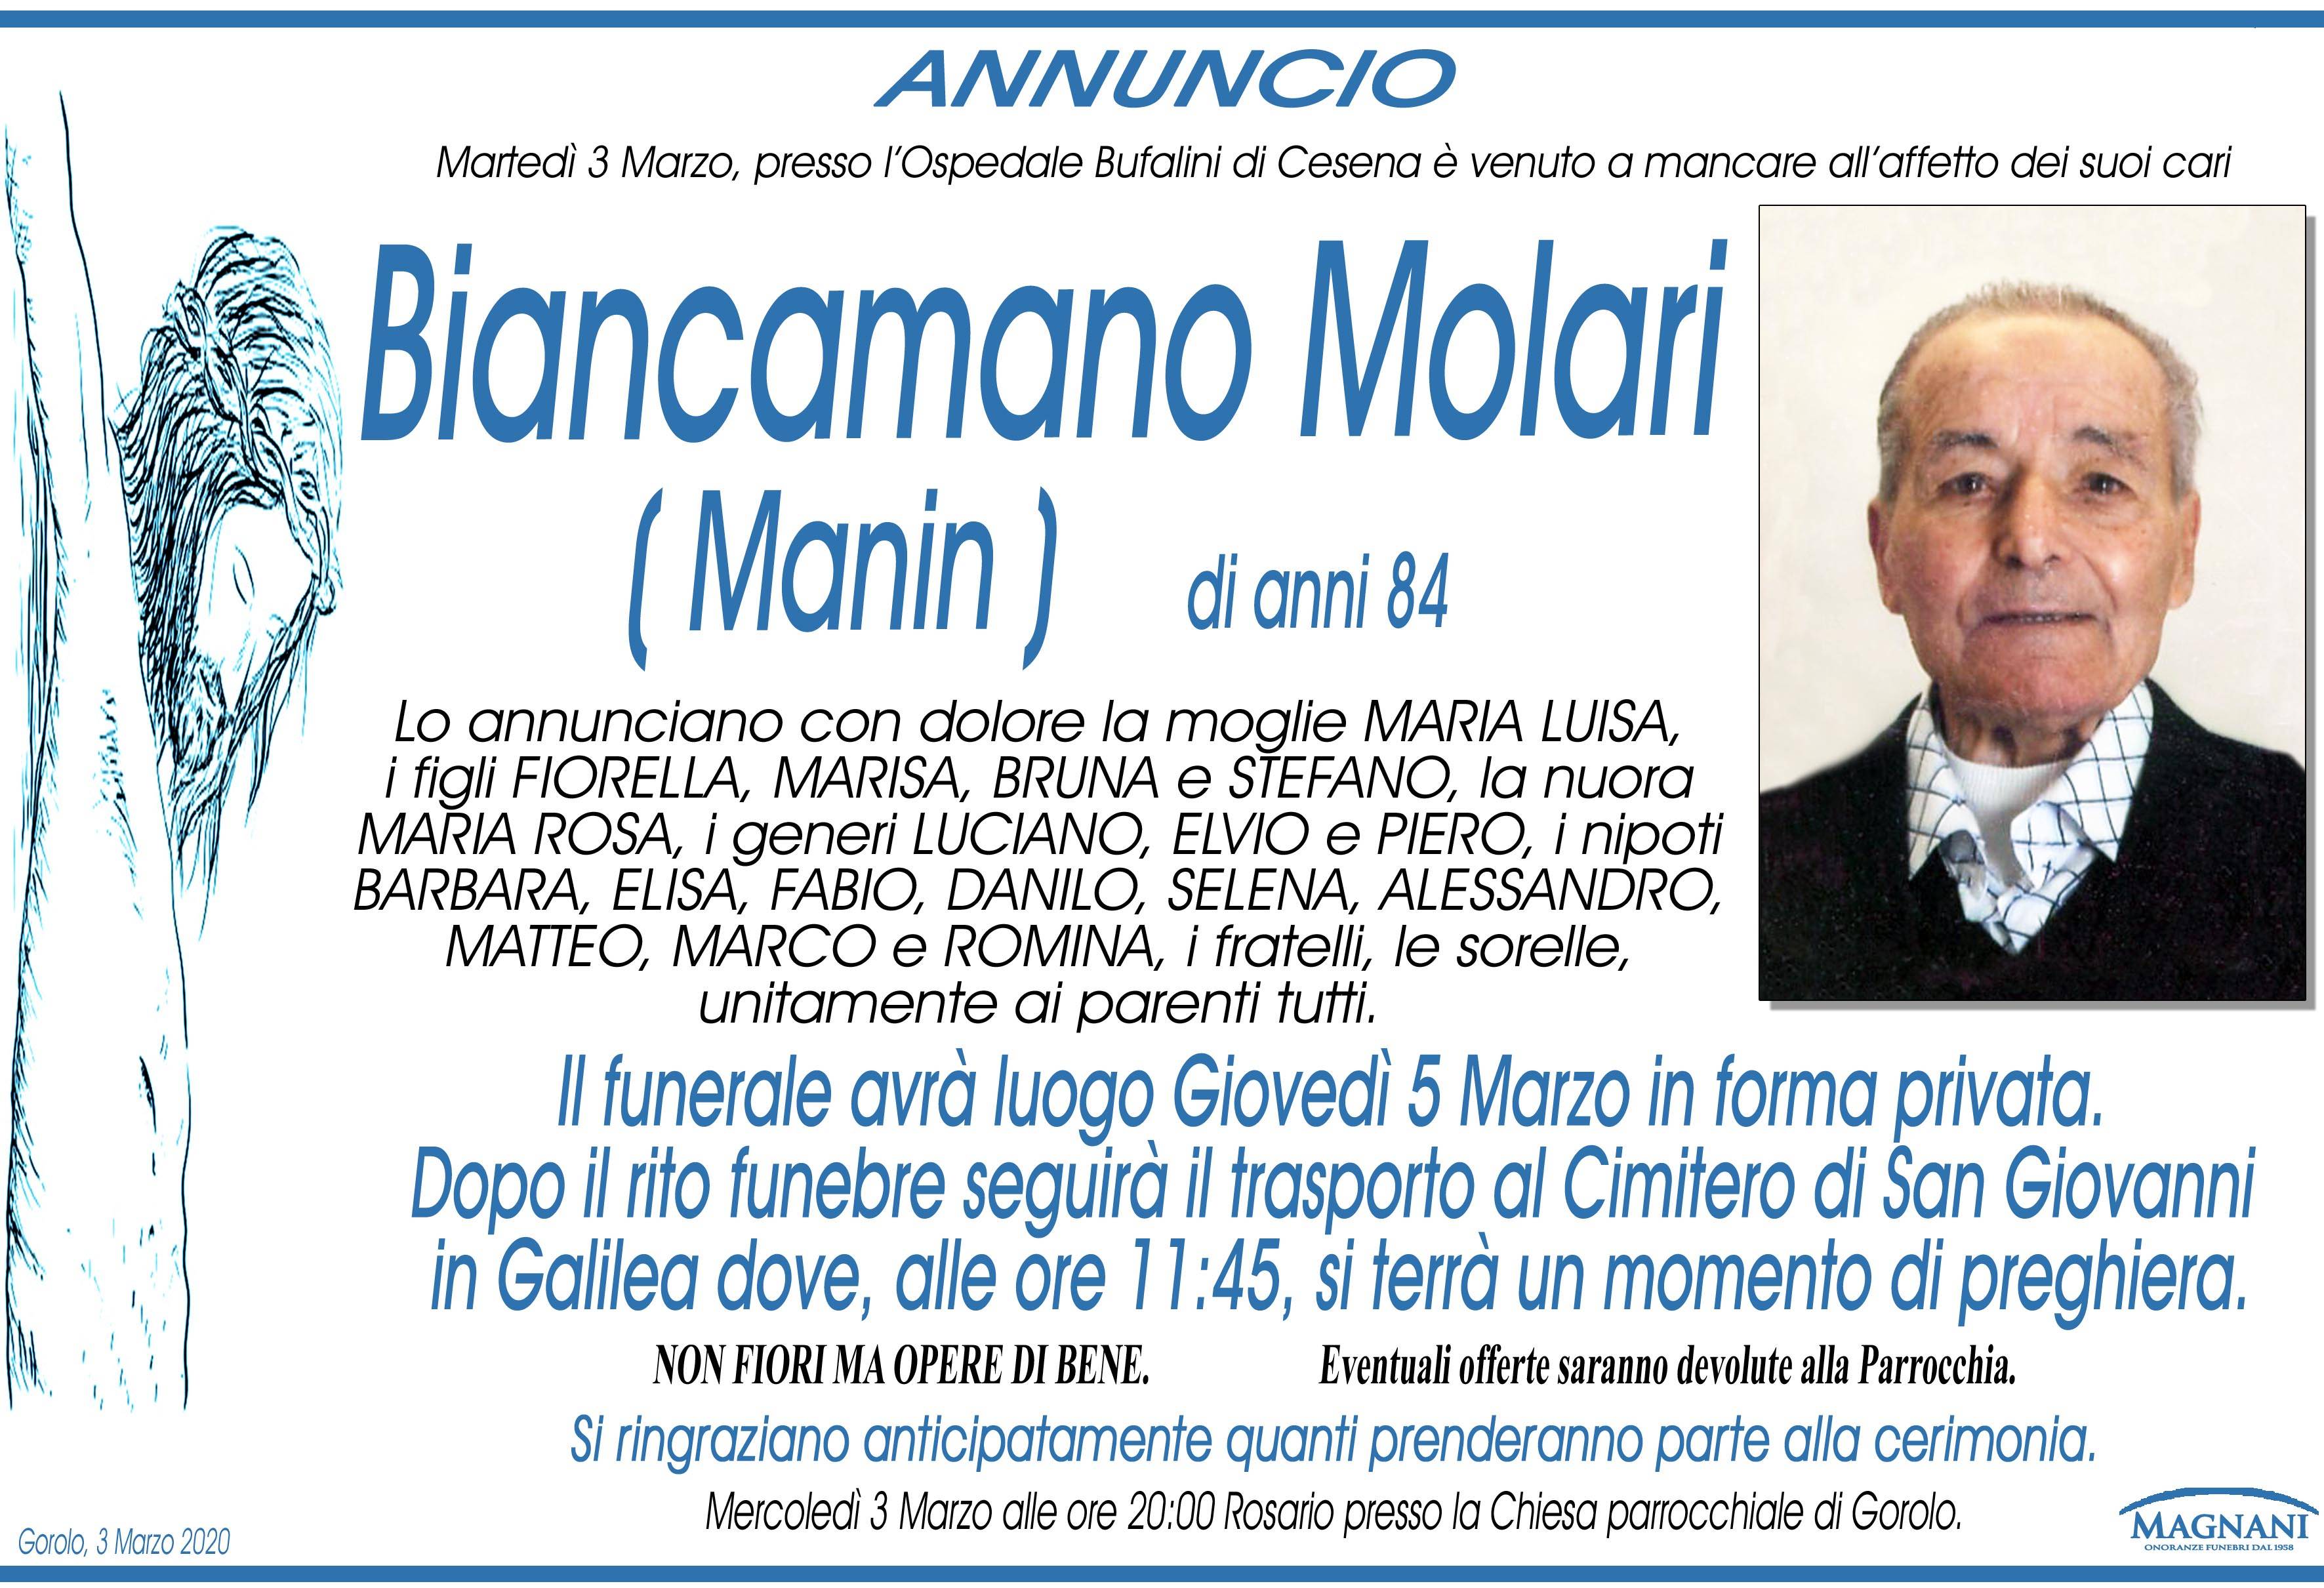 Biancamano Molari